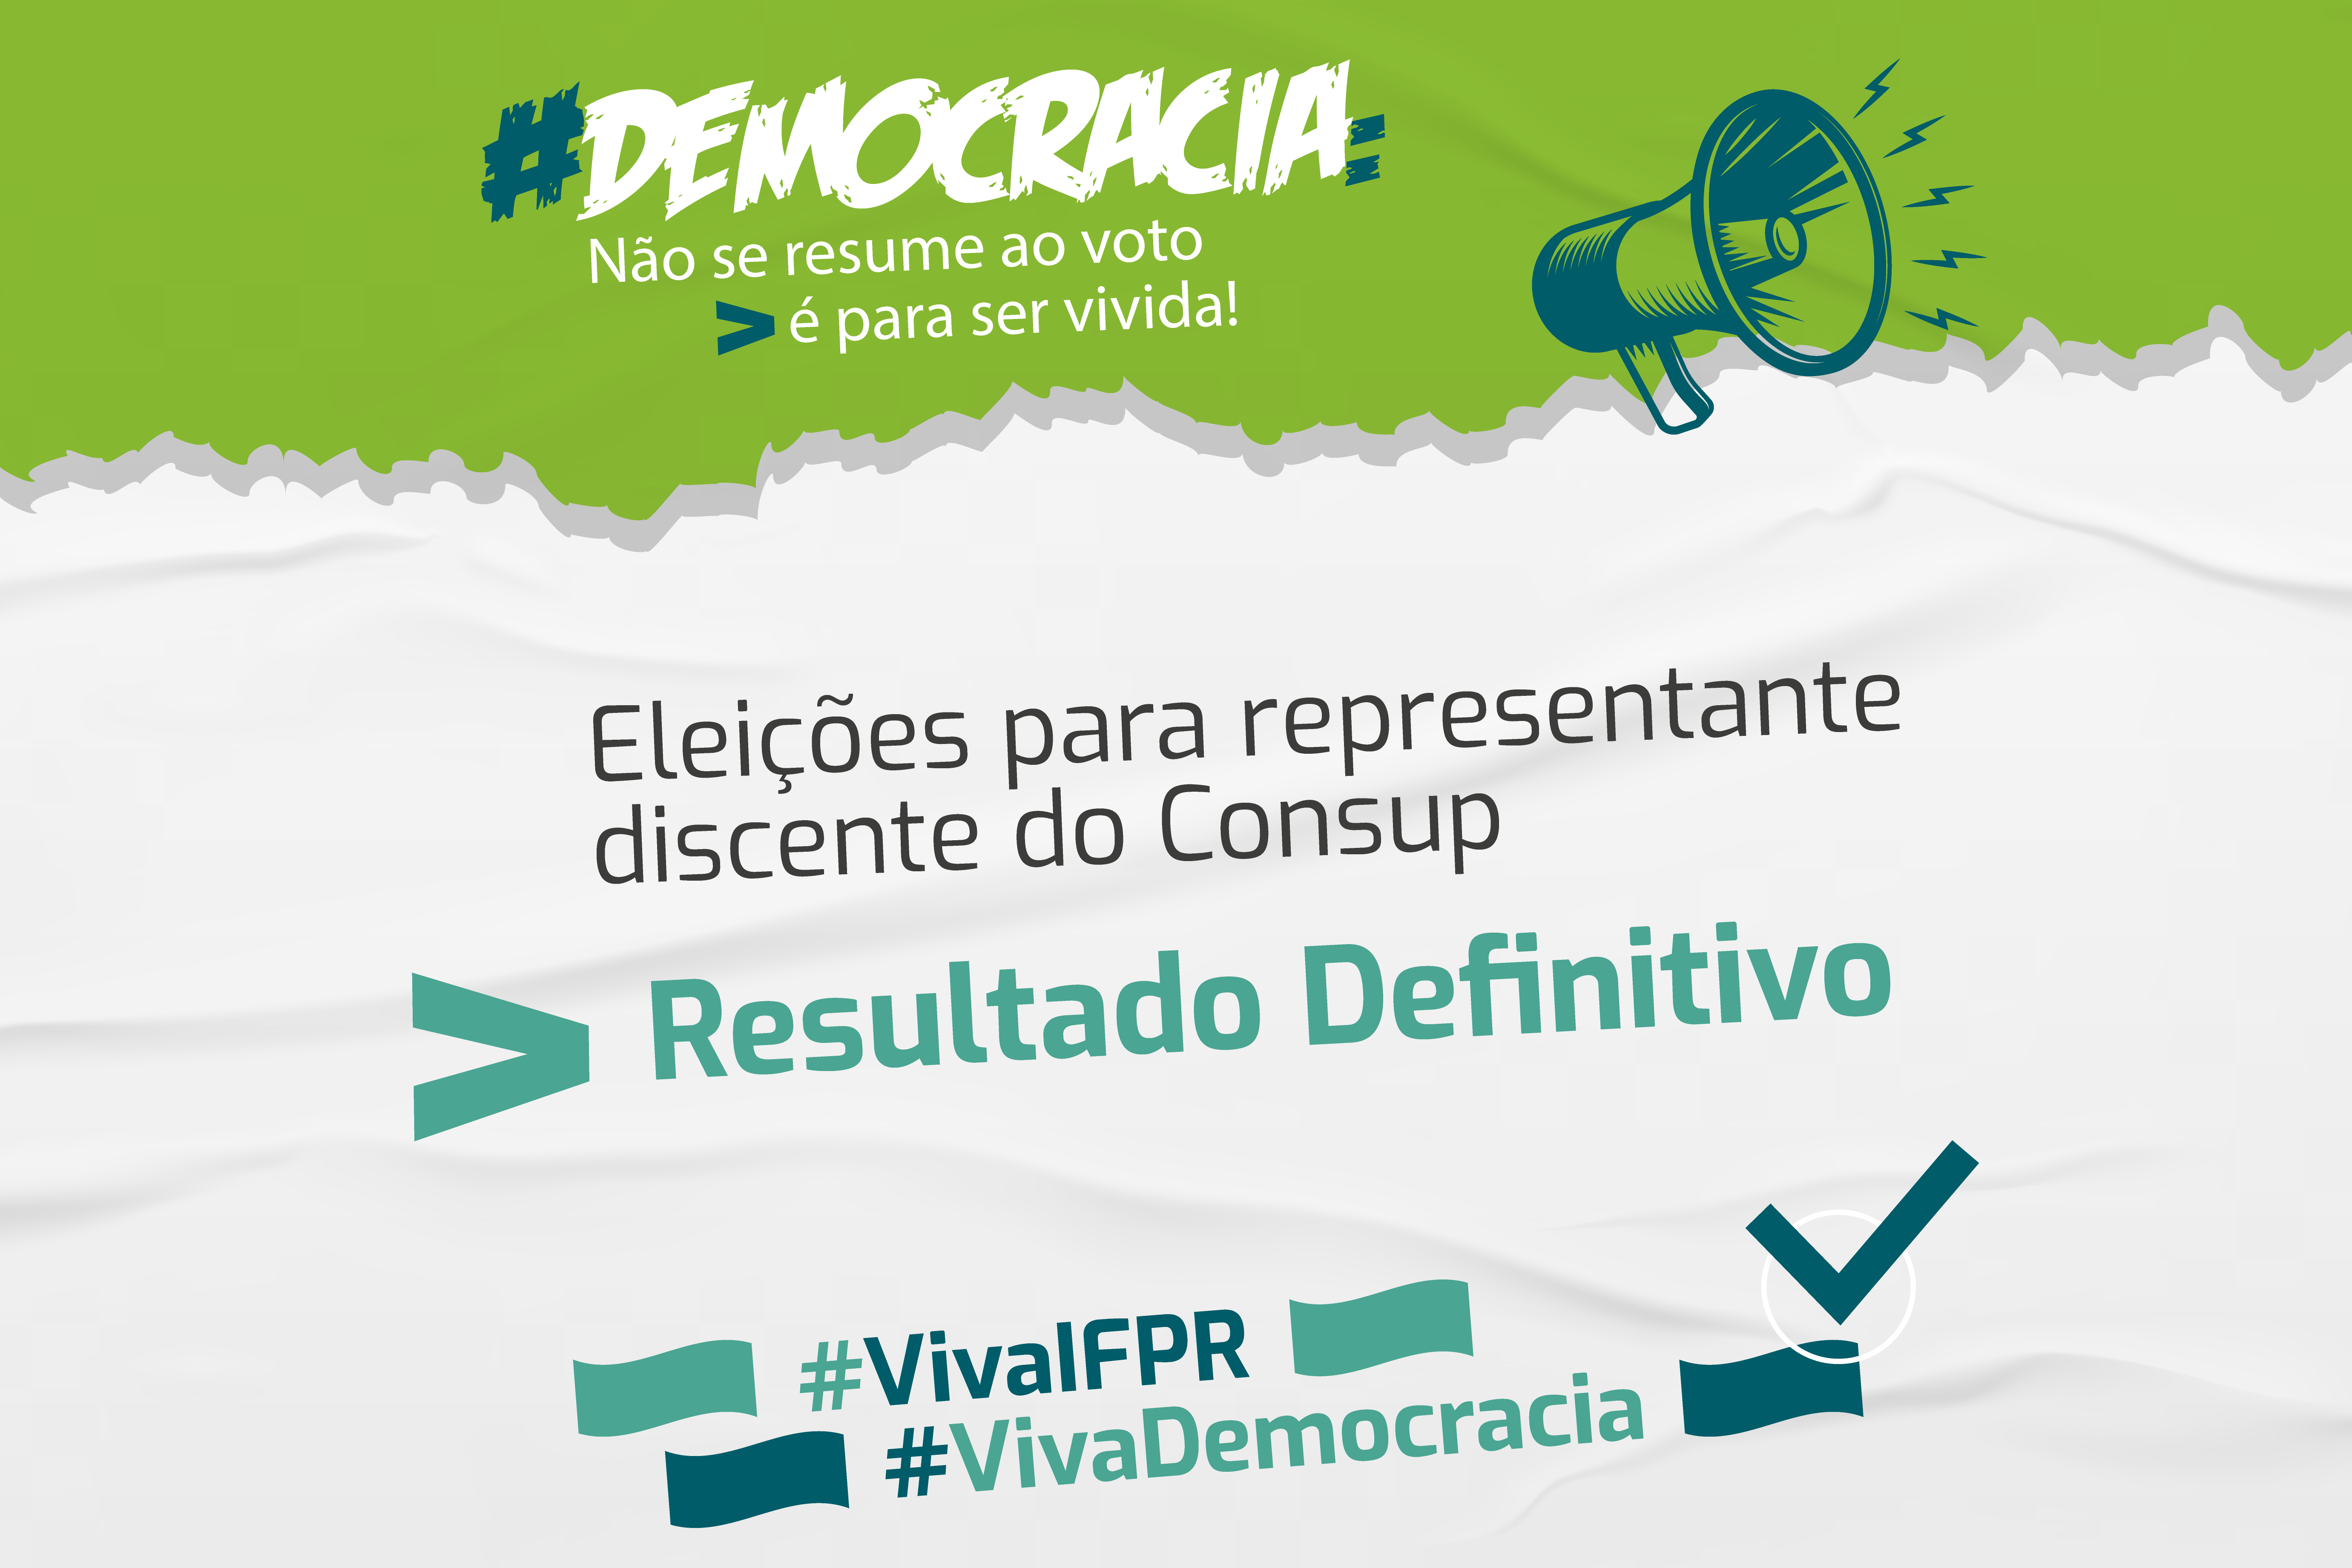 "Democracia. Eleições para representante discente do Consup. Resultado definitivo"